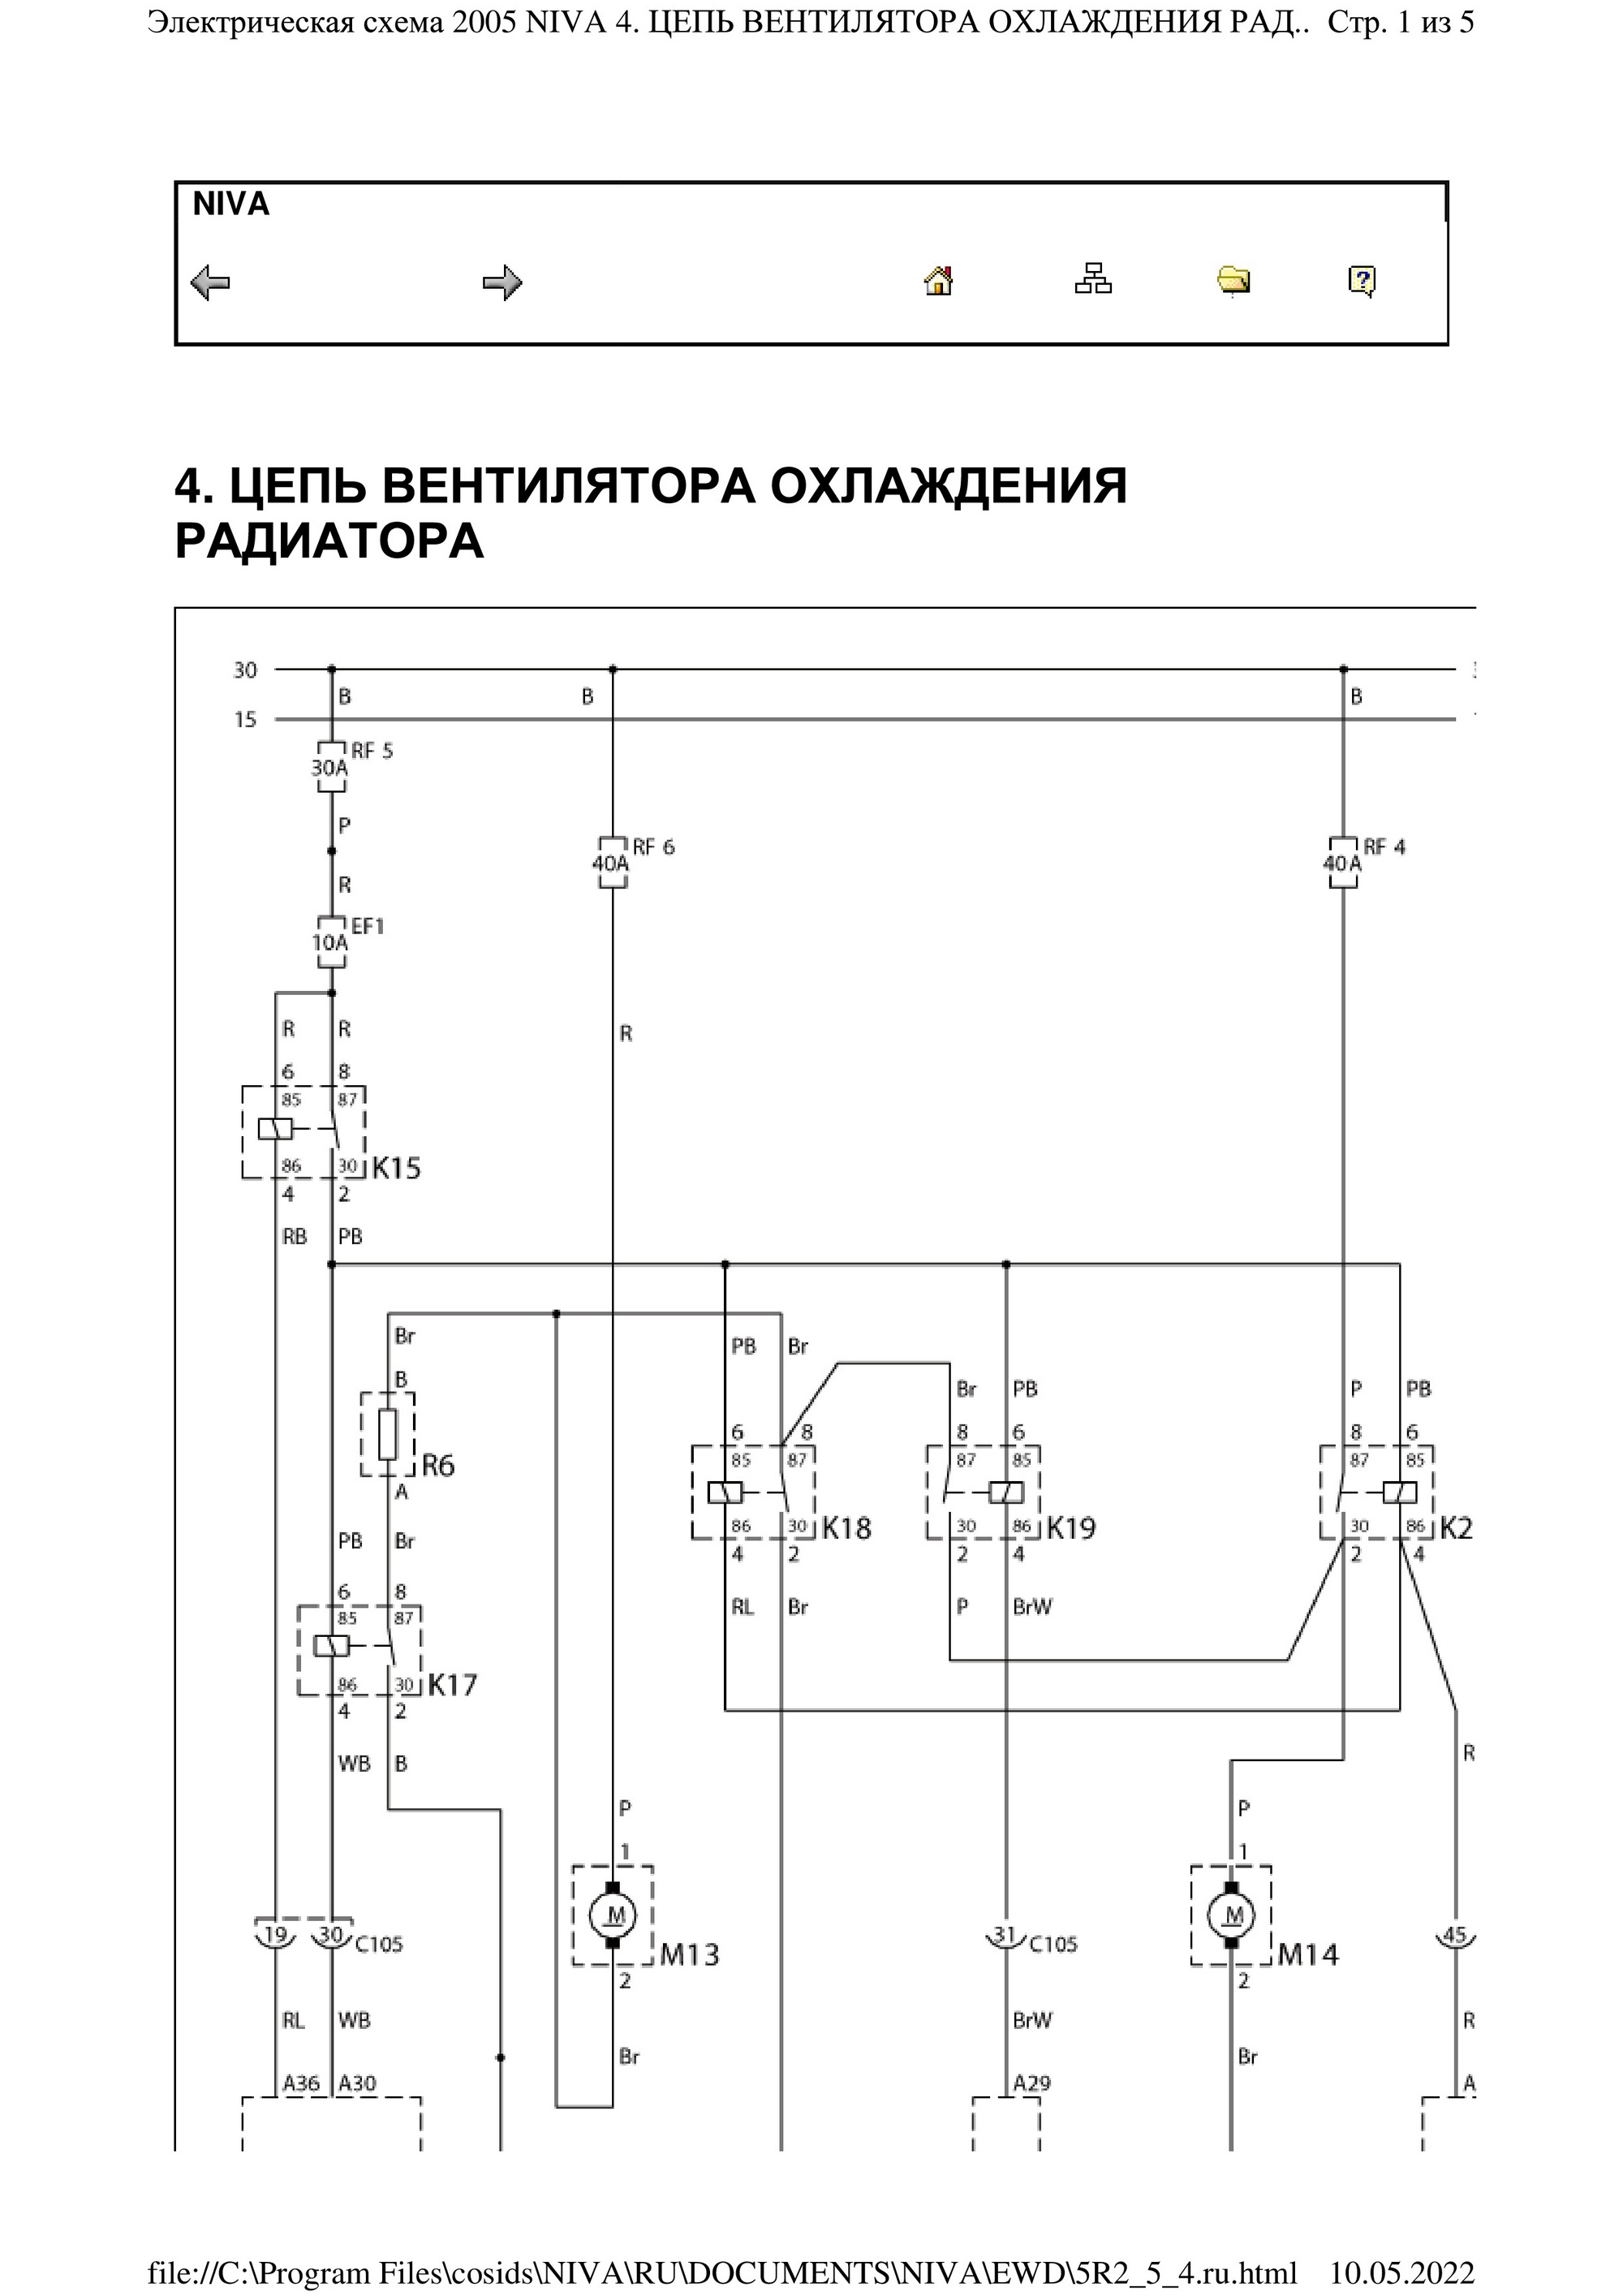 Электрическая схема 2005 NIVA 4. ЦЕПЬ ВЕНТИЛЯТОРА ОХЛАЖДЕНИЯ РАДИАТОРА_1.jpg